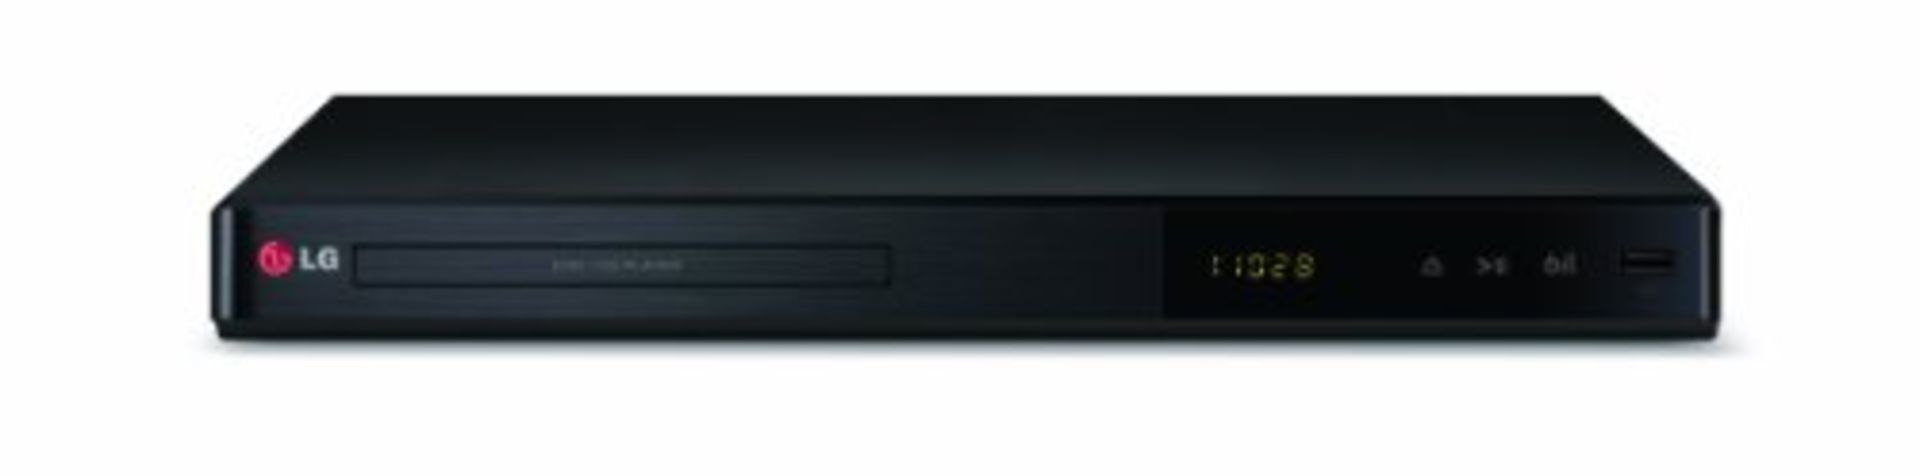 LG DP542H Full HD 1080p DVD Player, Black